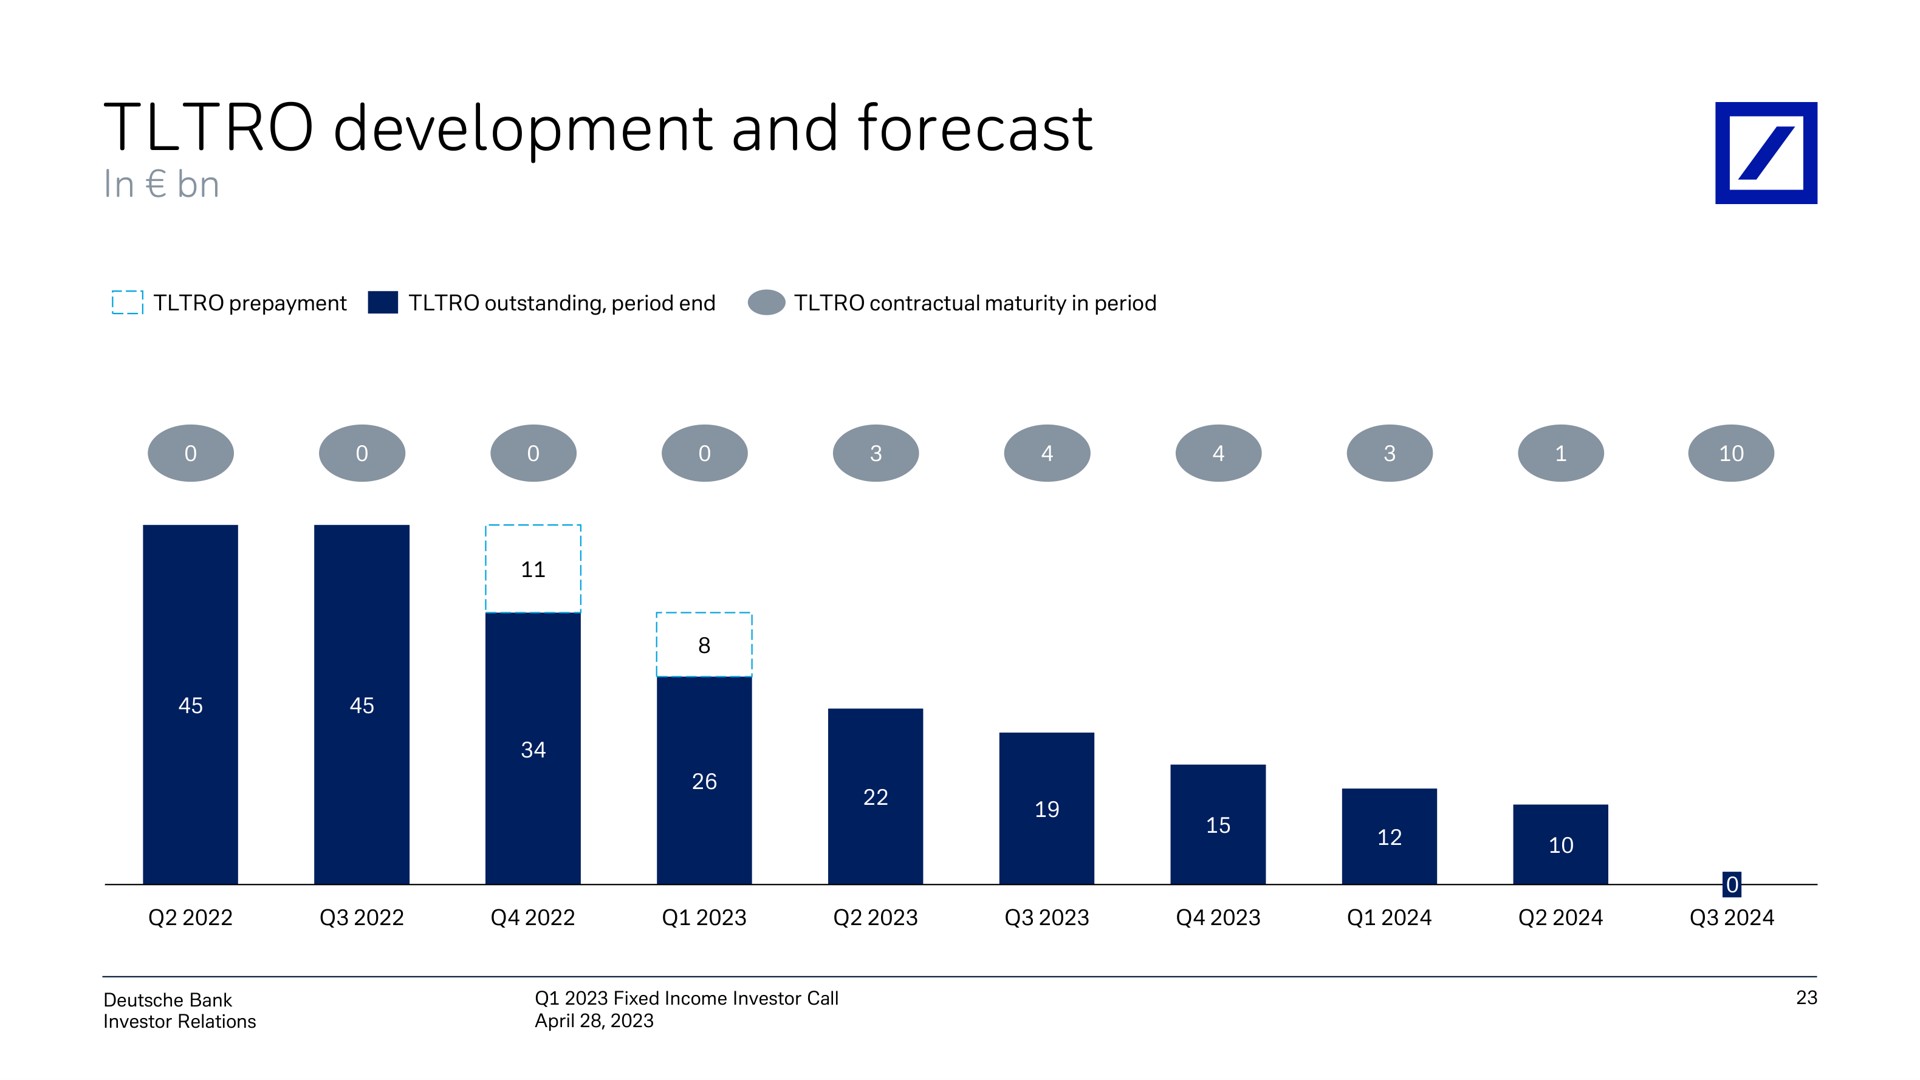 development and forecast | Deutsche Bank